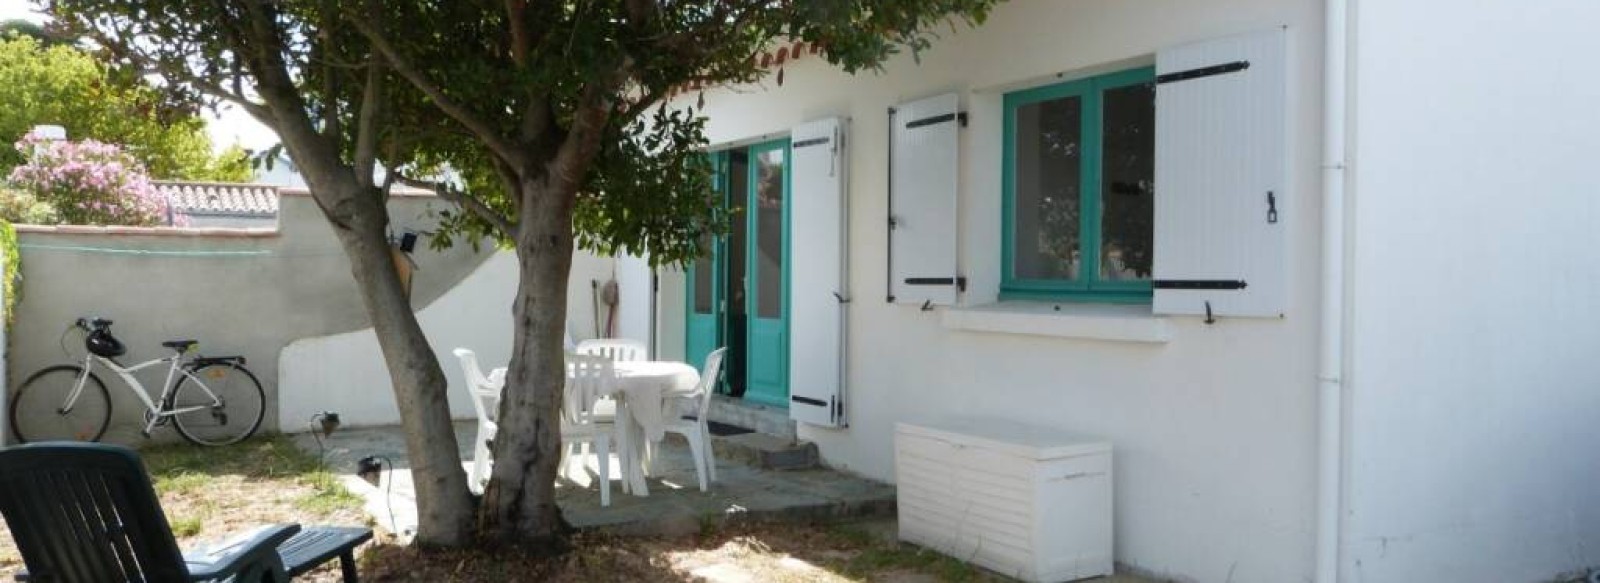 Maison de vacances dans le centre de Barbatre sur l'Ile de Noirmoutier